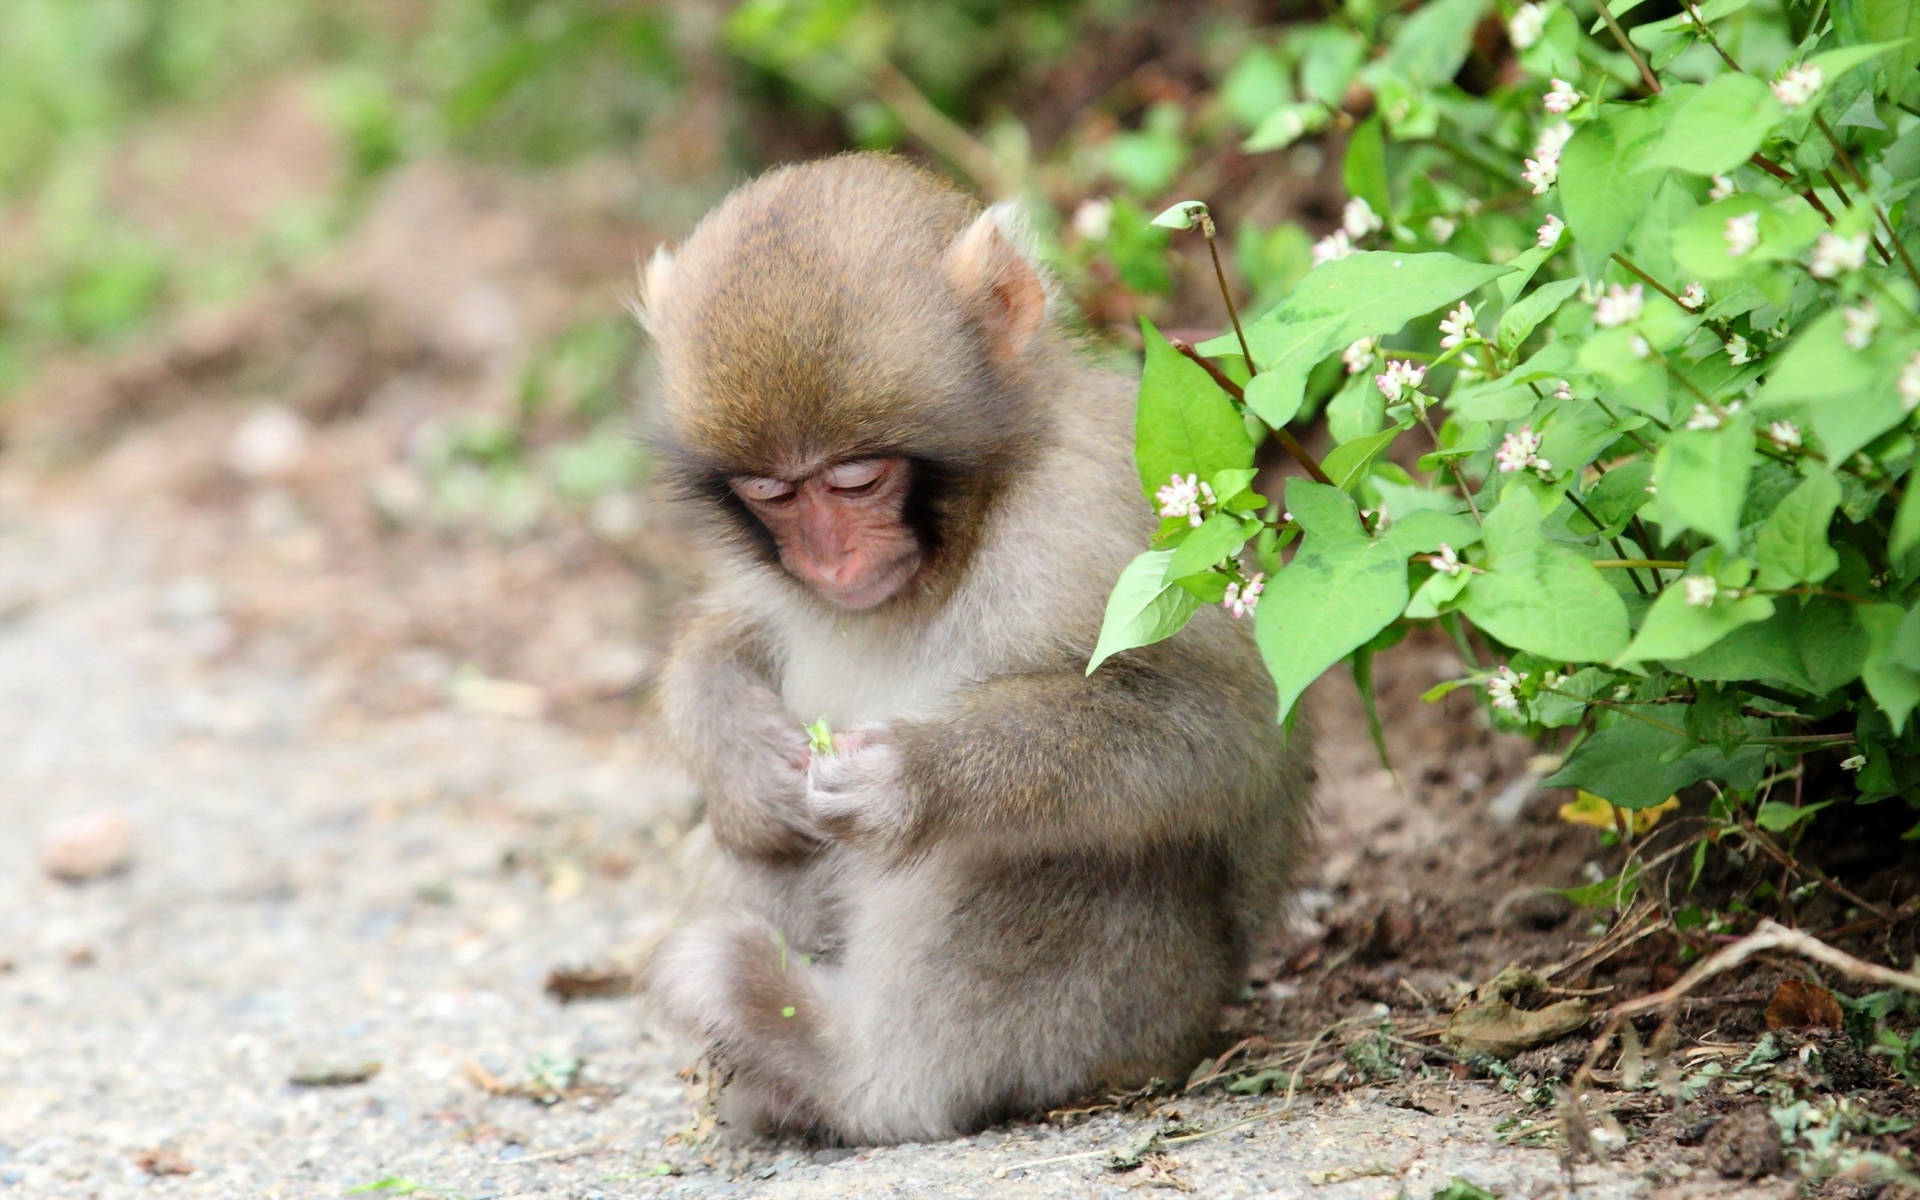 Cute Monkey Near Flower Plant